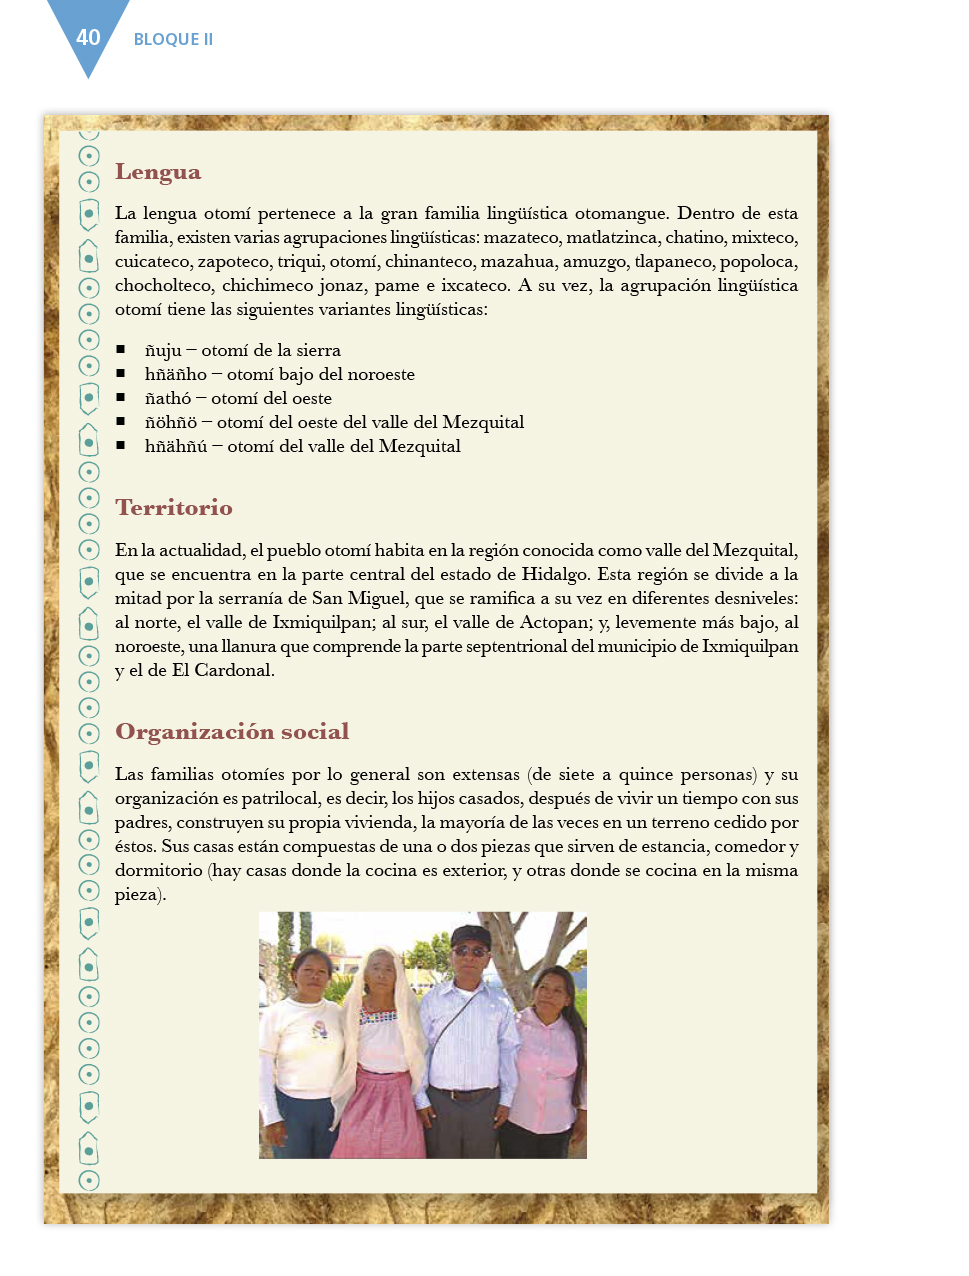 Español Cuarto grado 2017-2018 - Página 40 de 162 - Libros de Texto Online